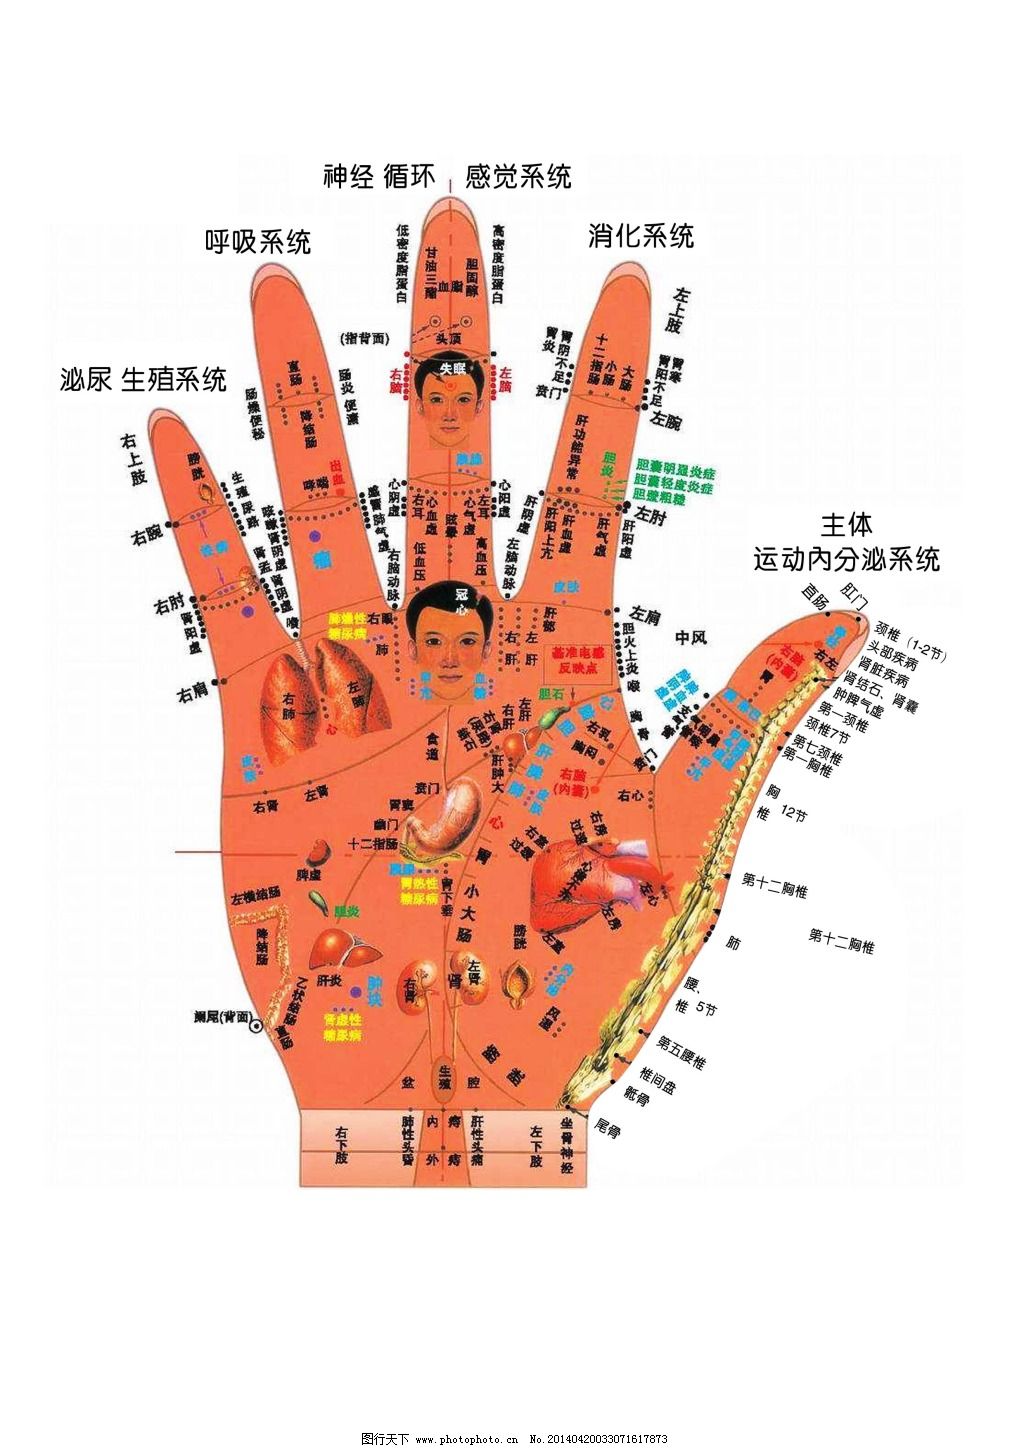 图106 手神经和血管的投影-人体表面解剖学及-医学